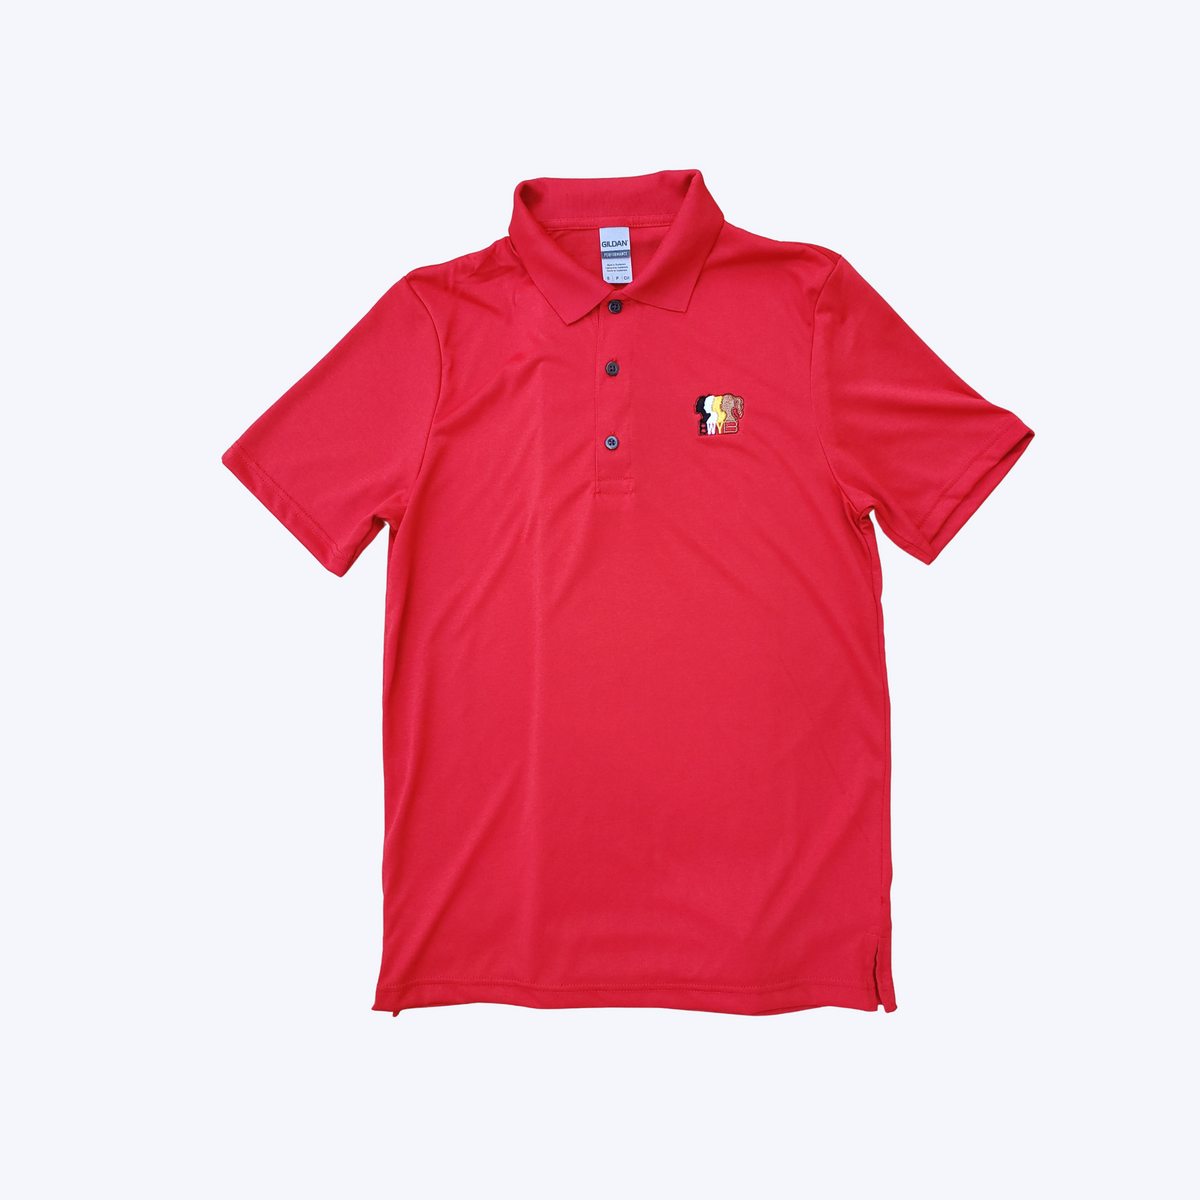 BWYB Golf Shirts